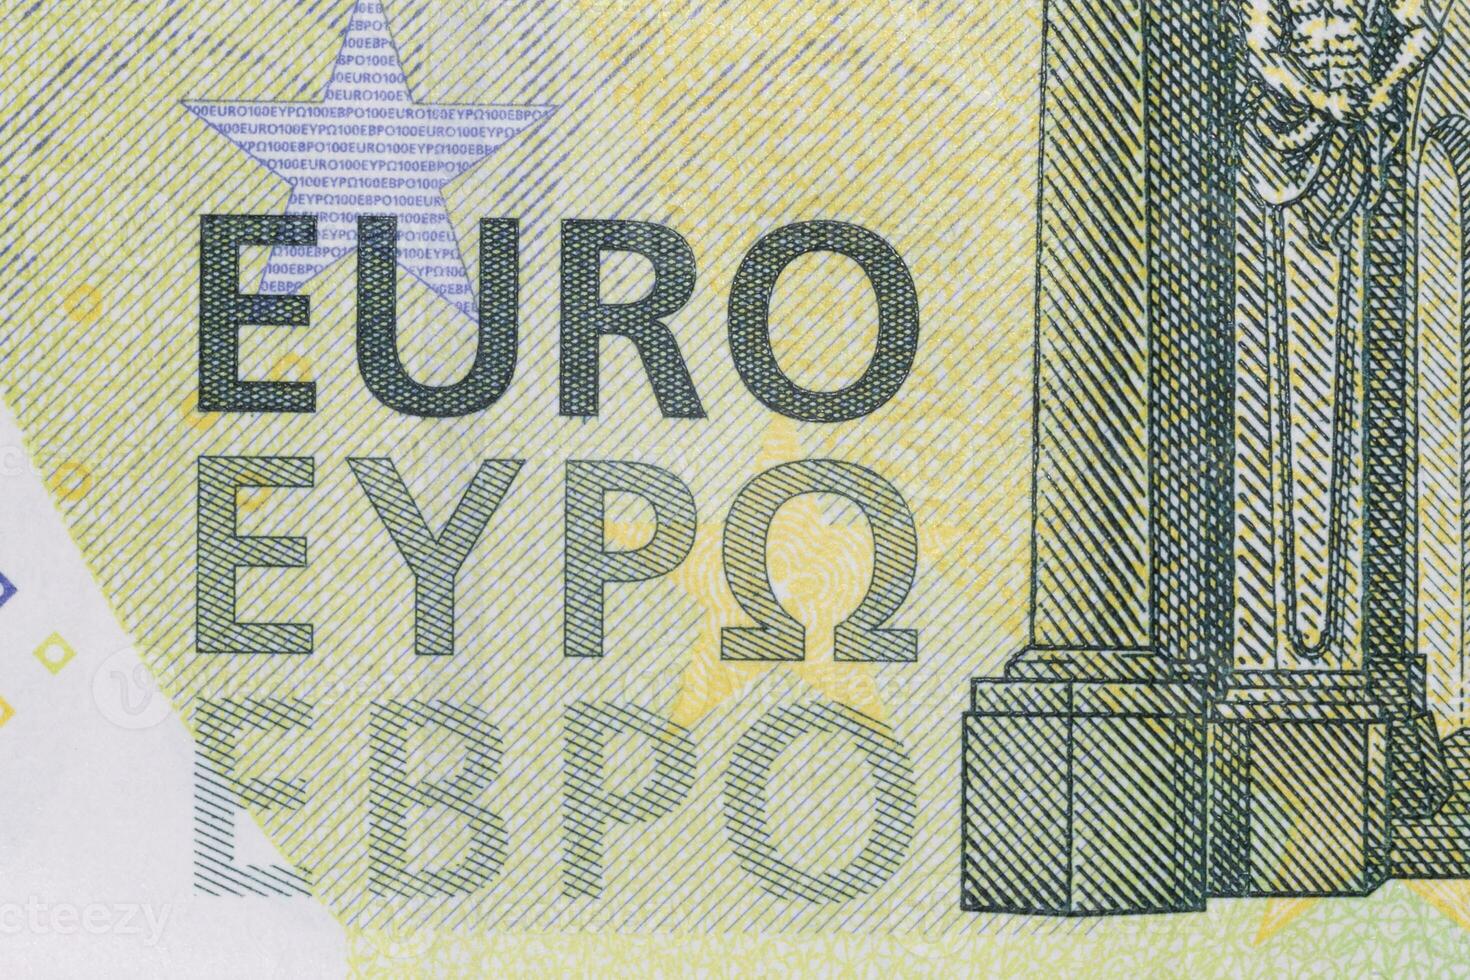 palabra euro en uno cien euro billete de banco foto